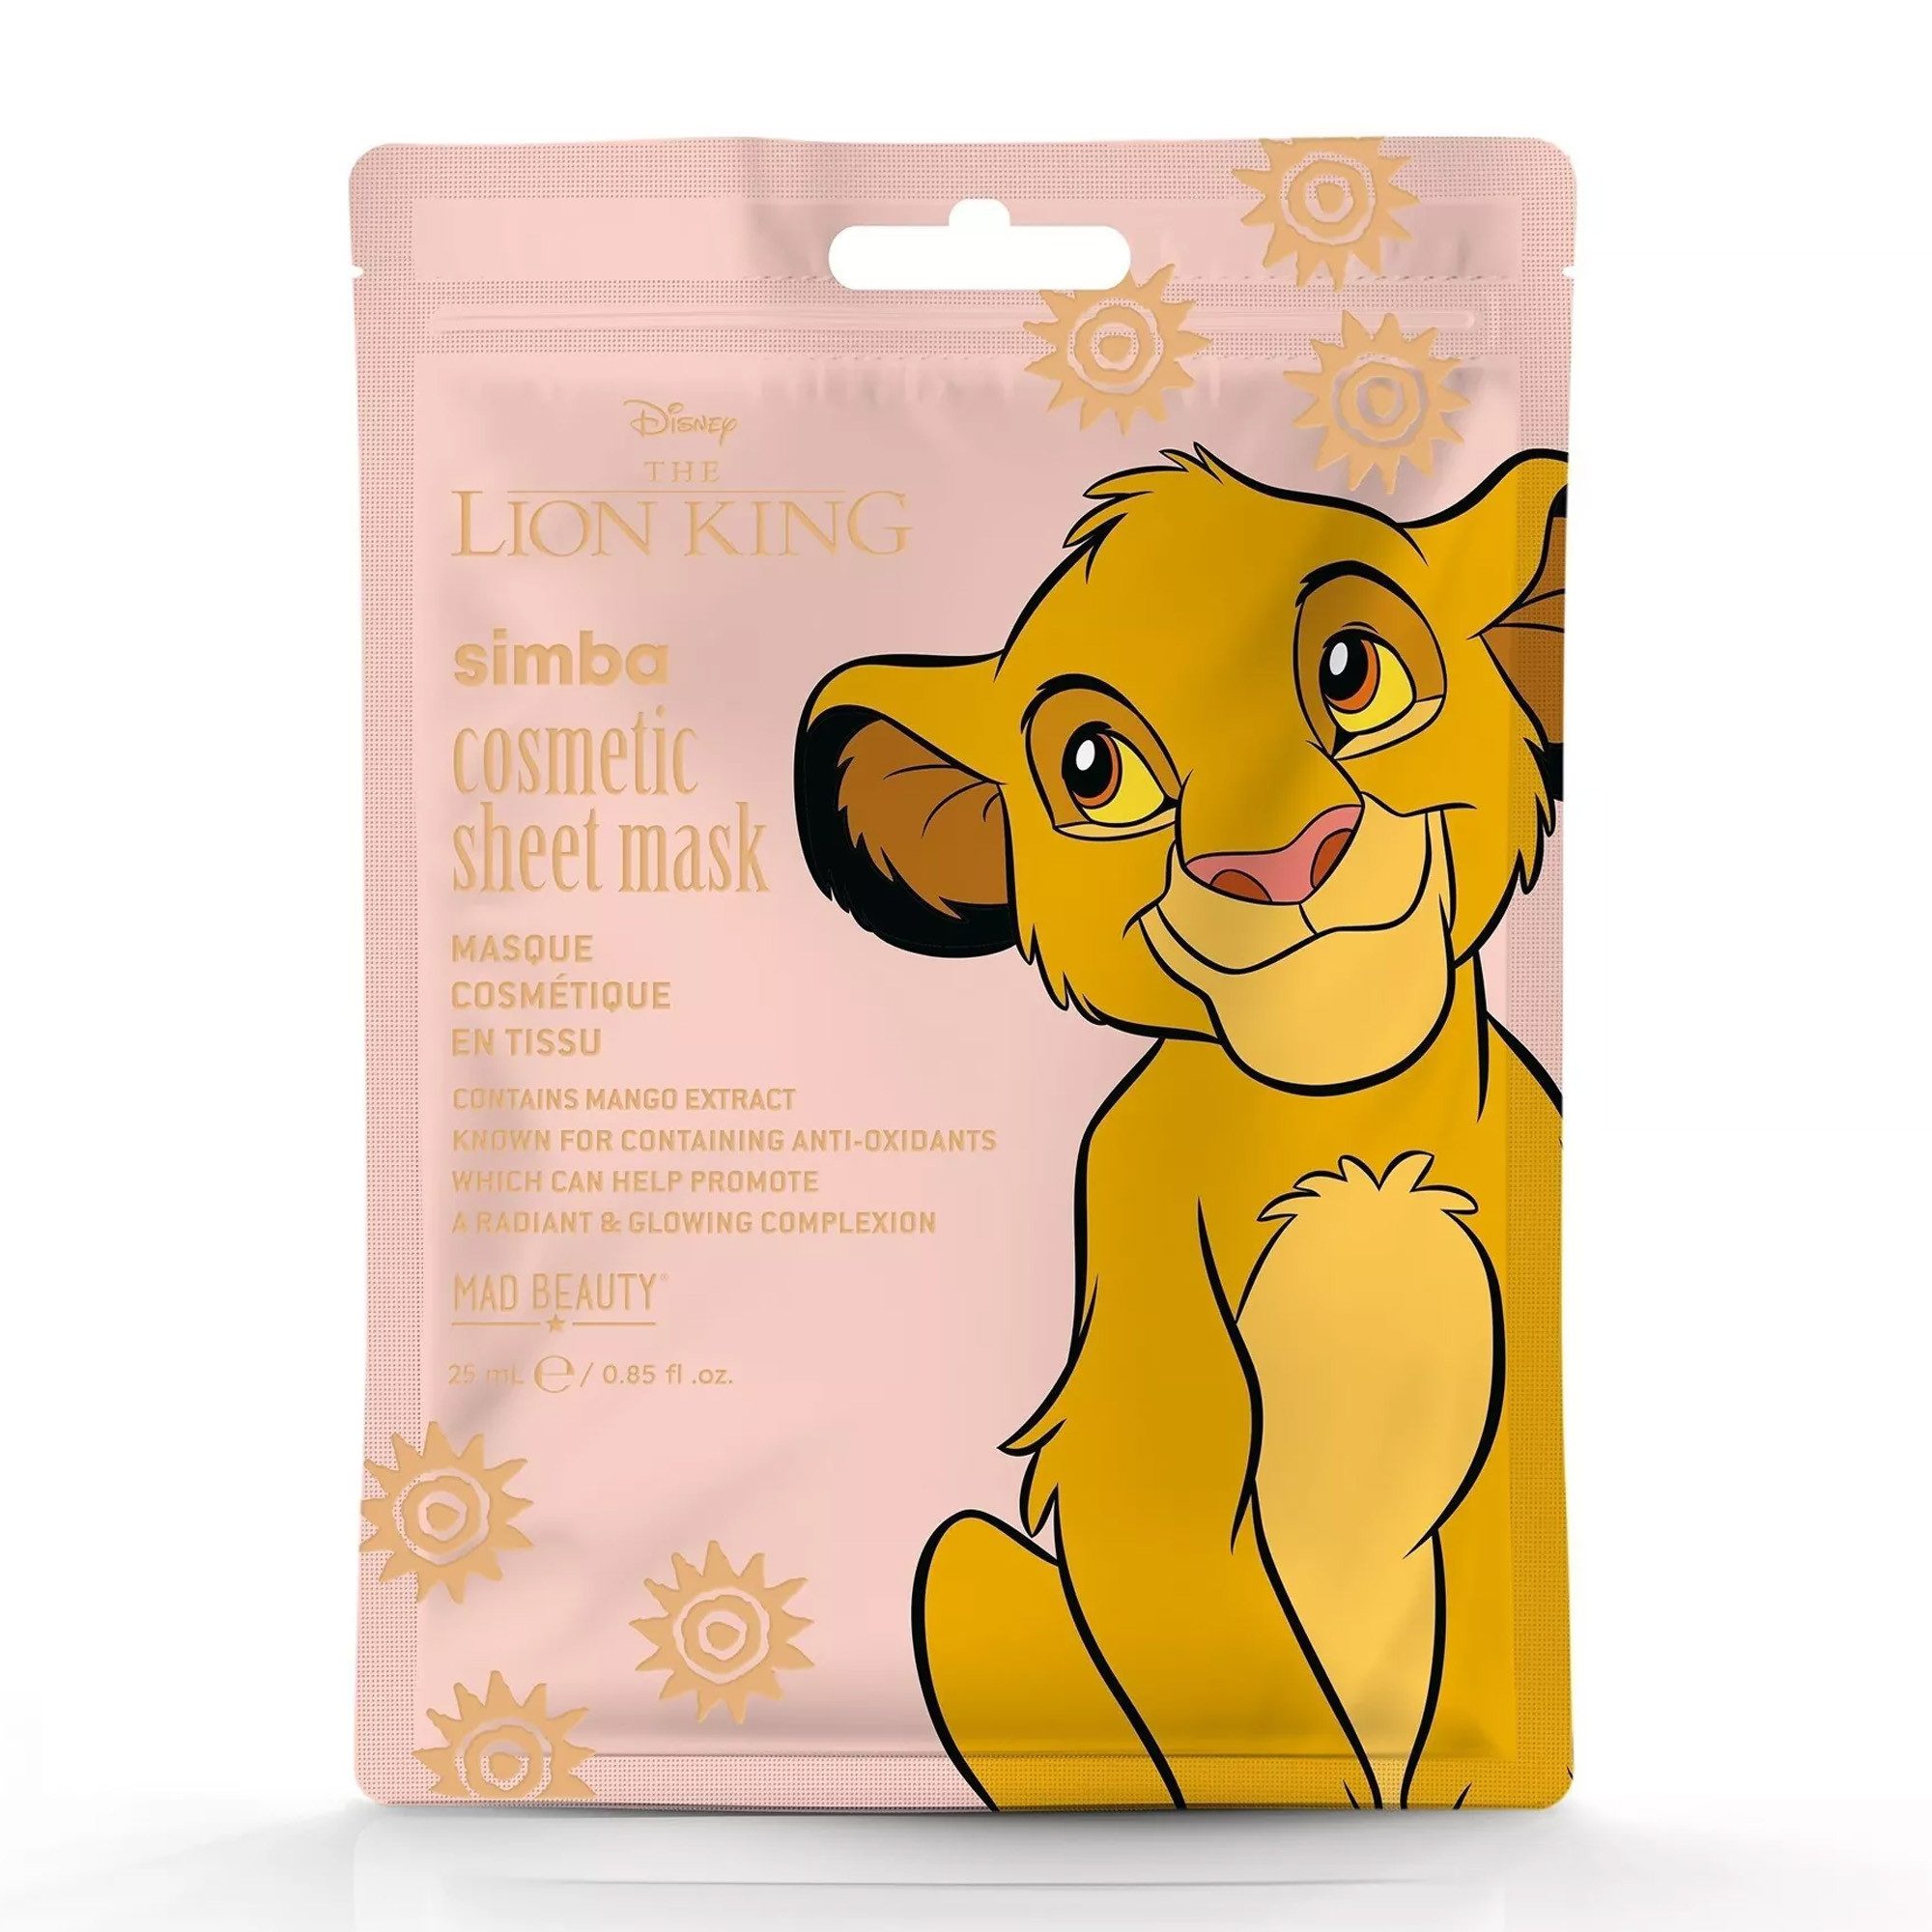 Mad Beauty Gesichtsmaske Simba - Disney König der Löwen, mit 25 ml Inhalt